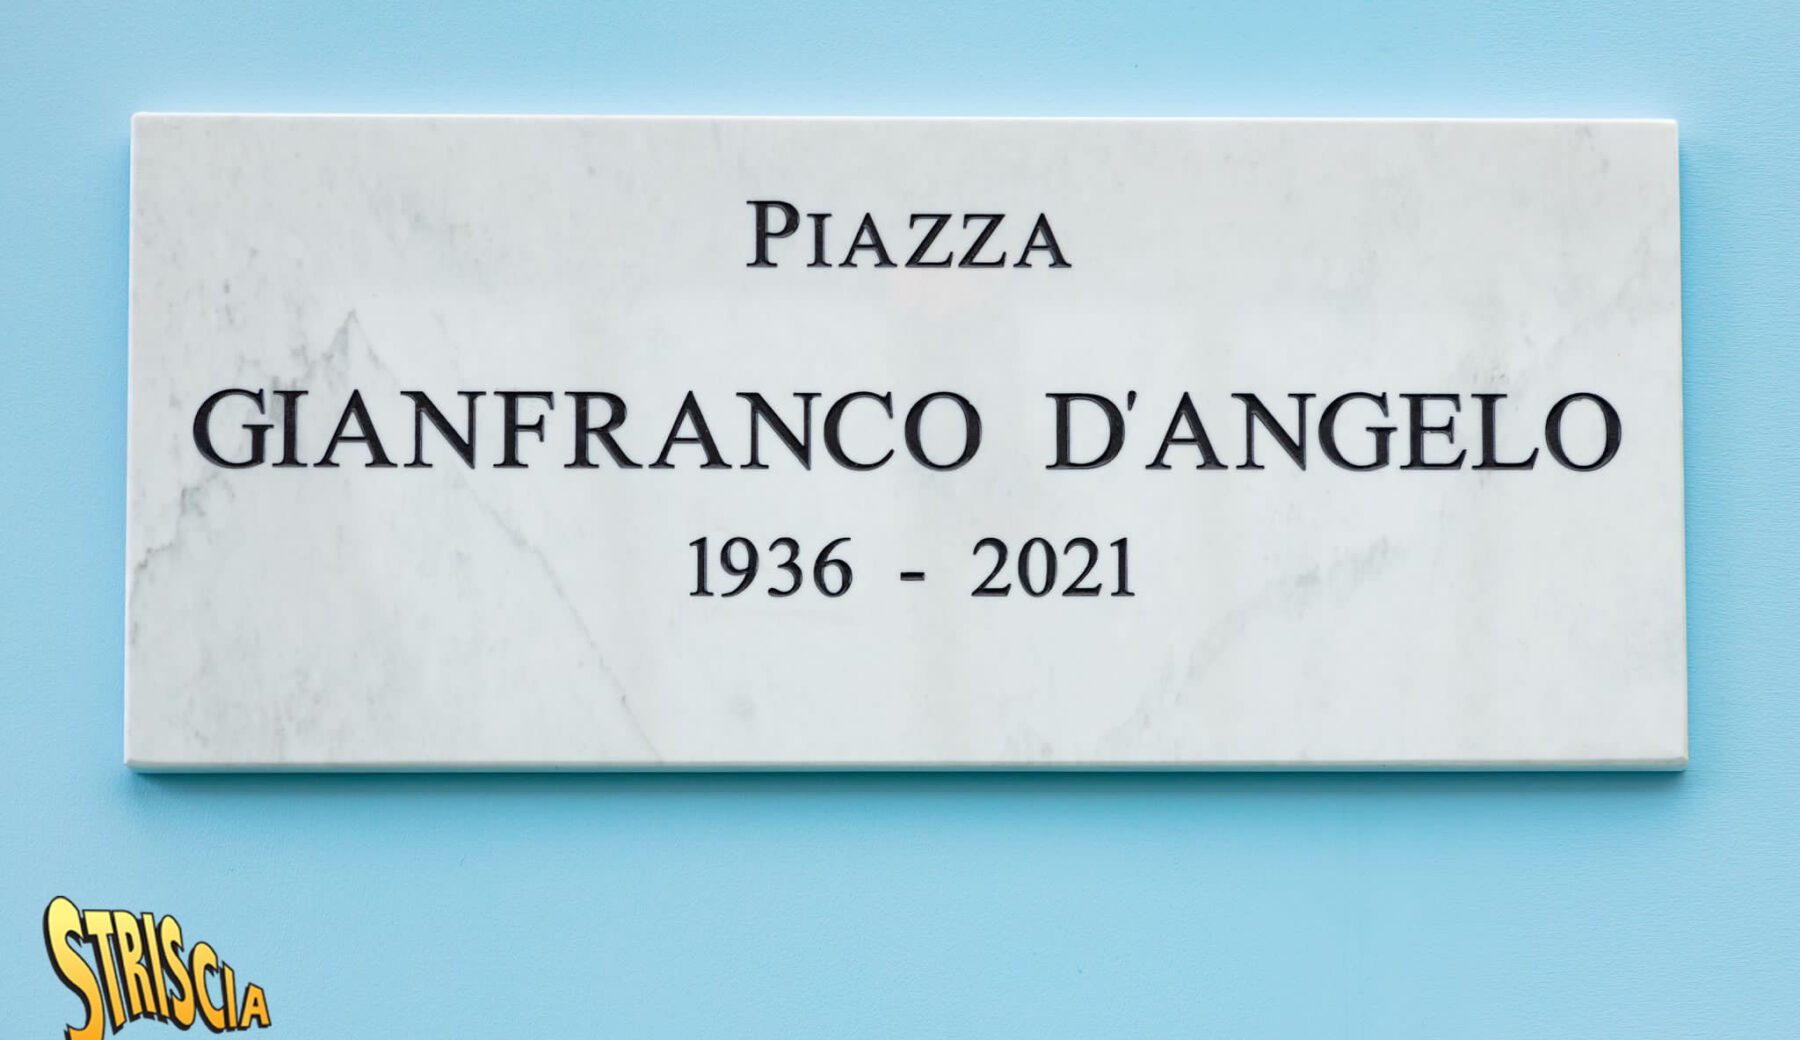 Davanti allo studio di Striscia è stata inaugurata piazza Gianfranco D’Angelo